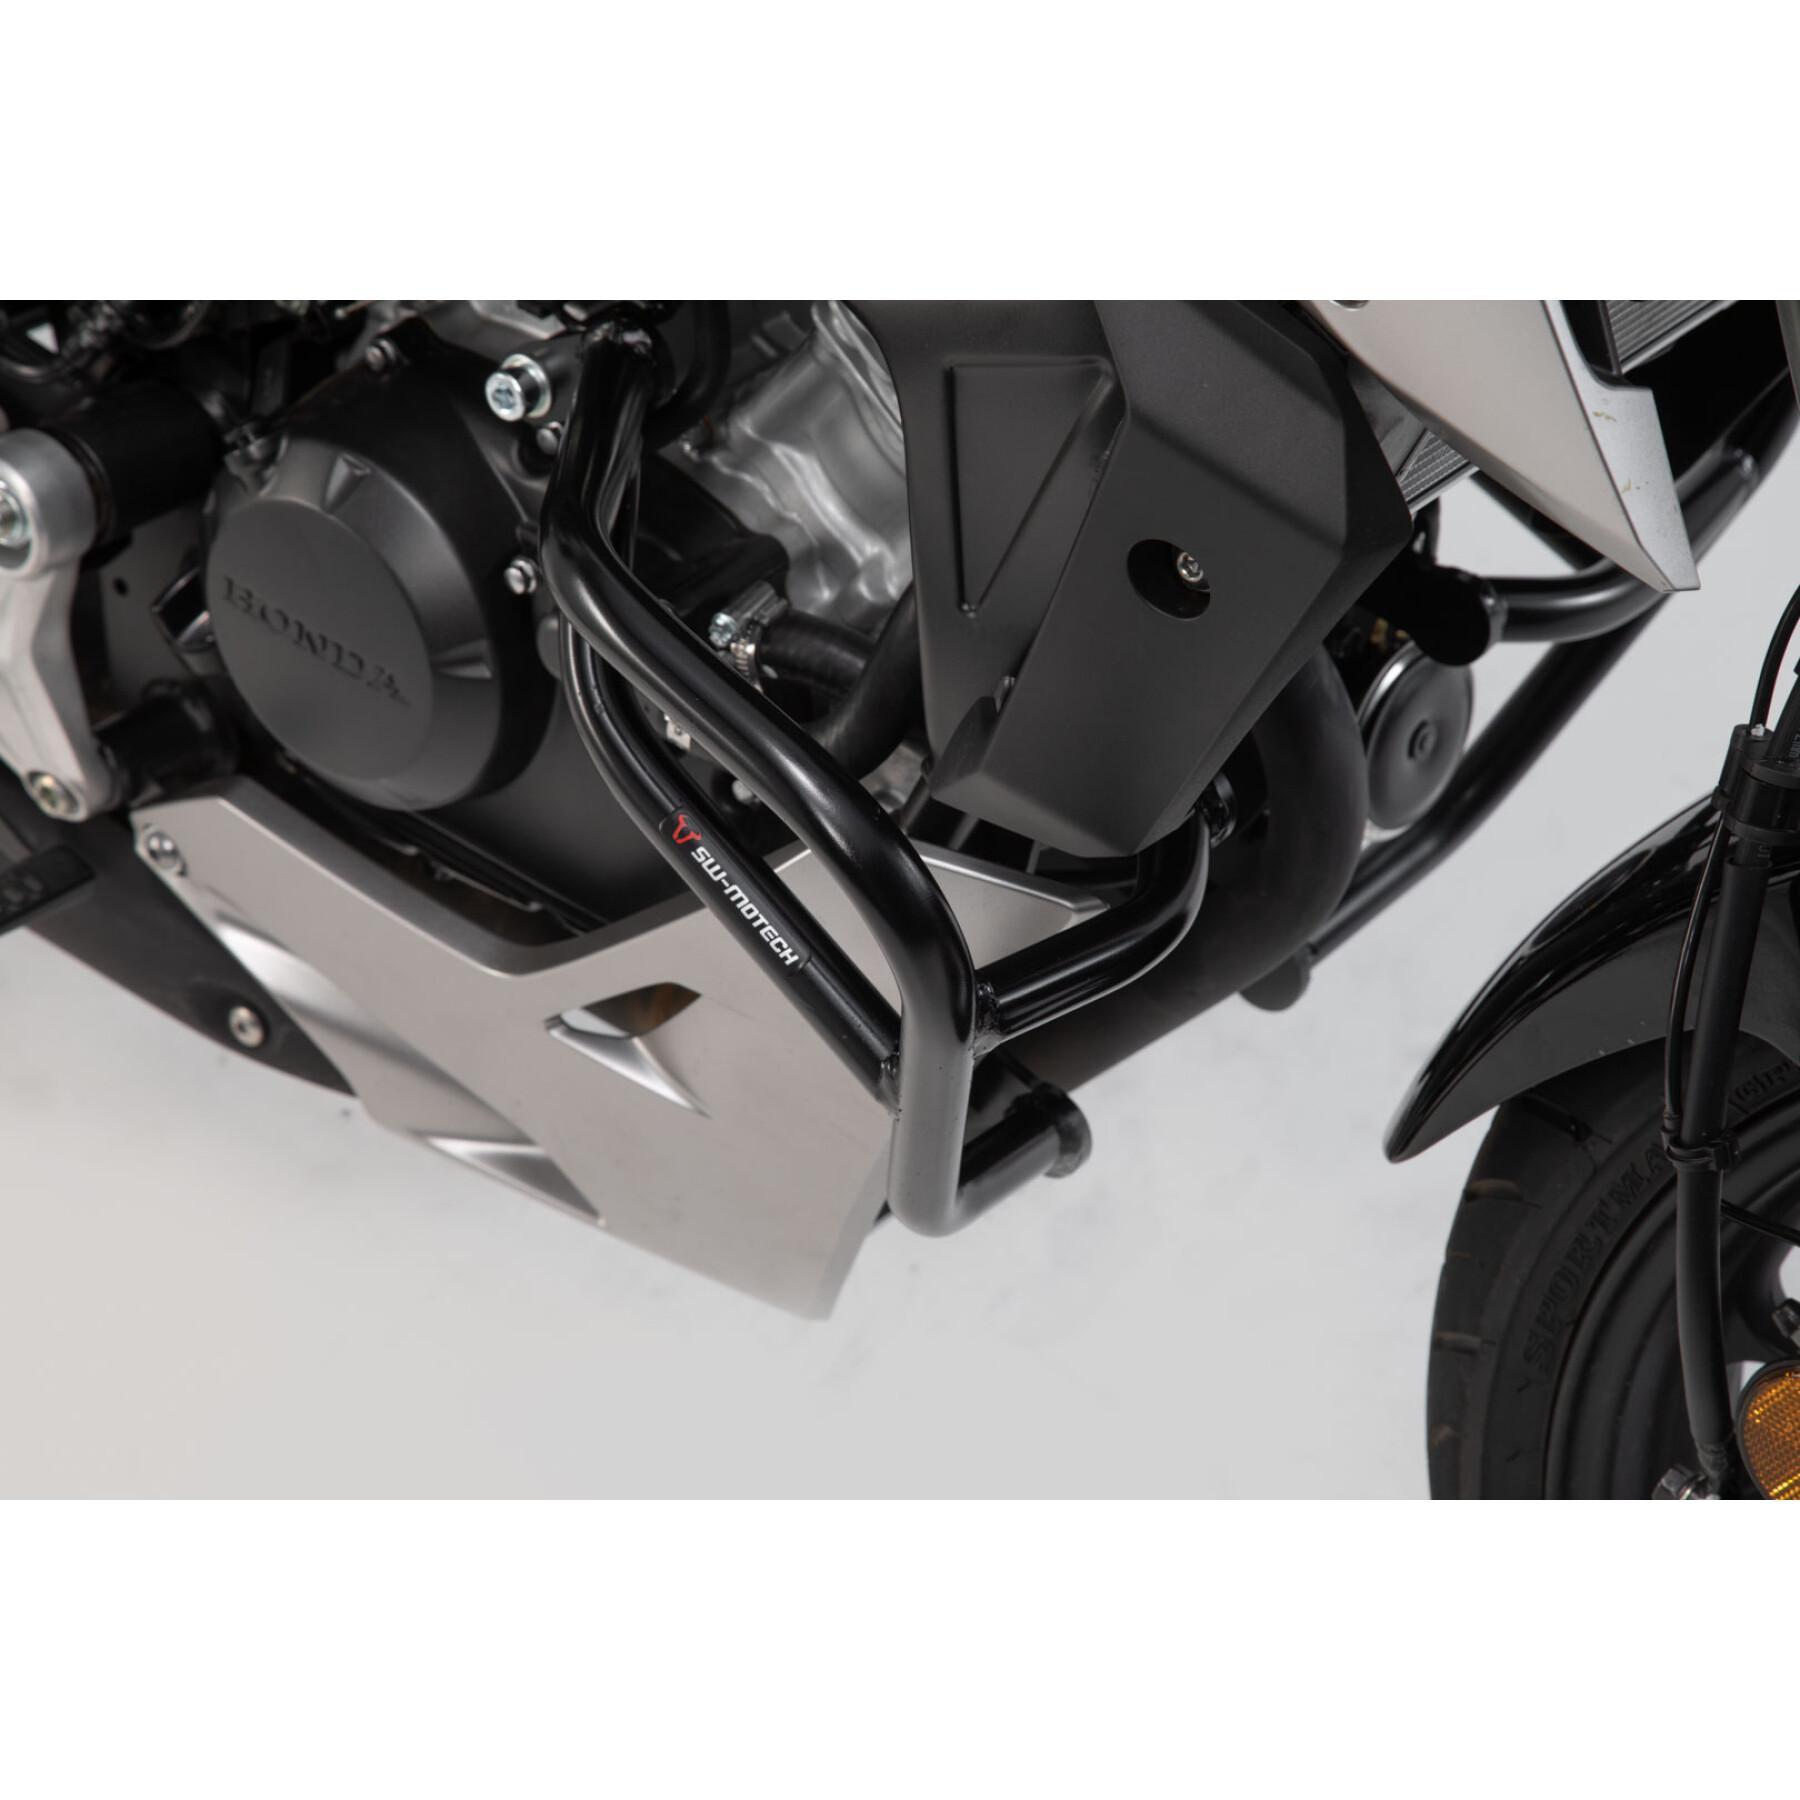 Motorrad-Standartenschutz Sw-Motech Crashbar Honda Cb125r (18-)